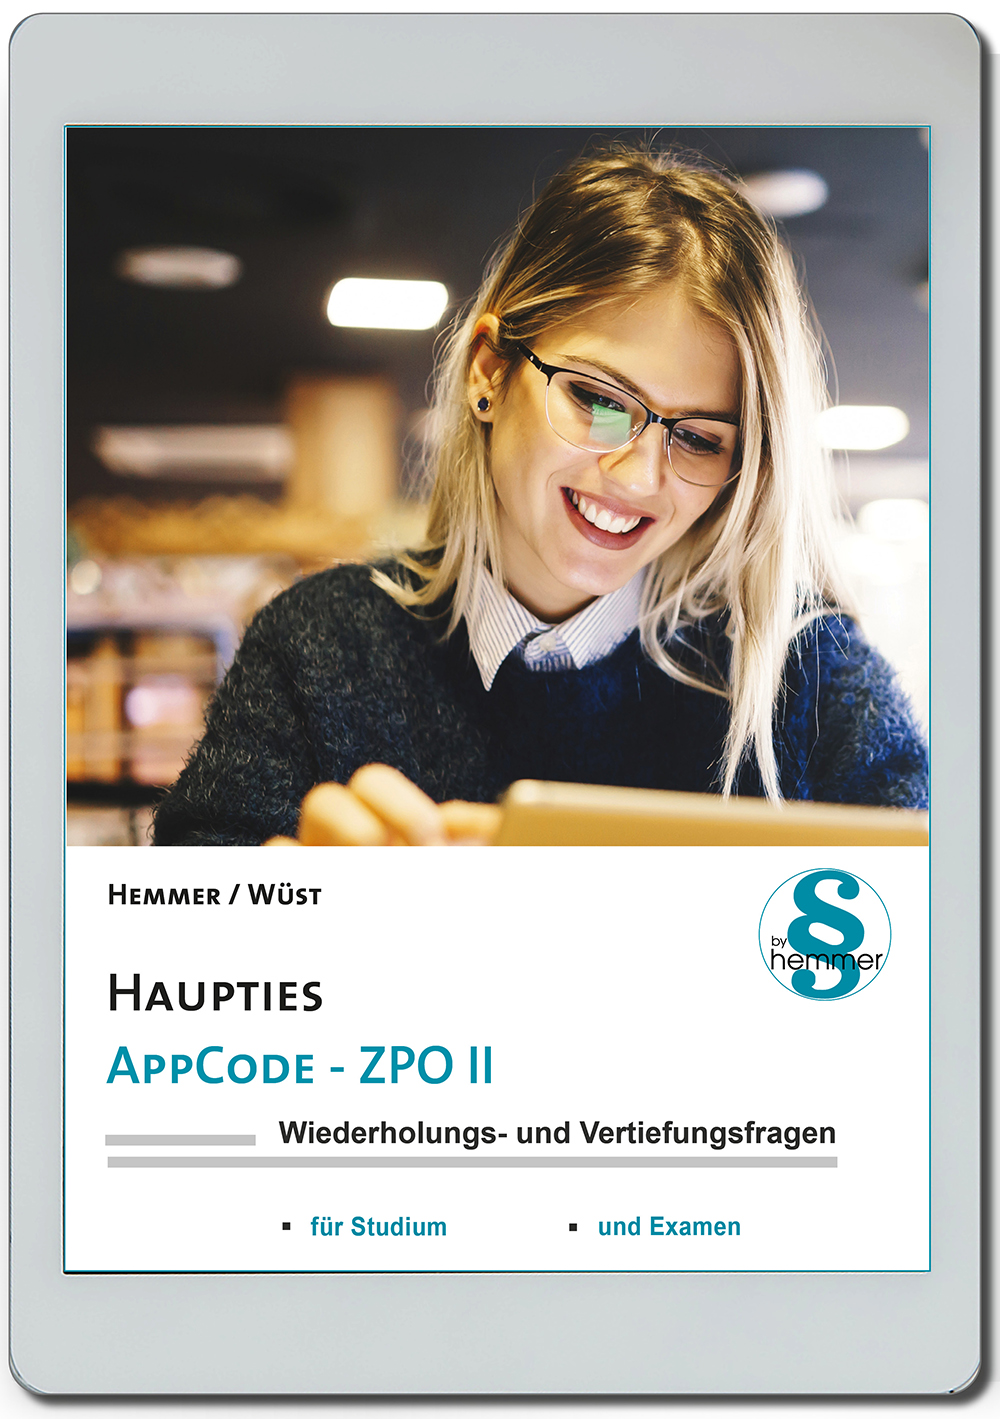 AppCode - haupties - Zivilprozessrecht II